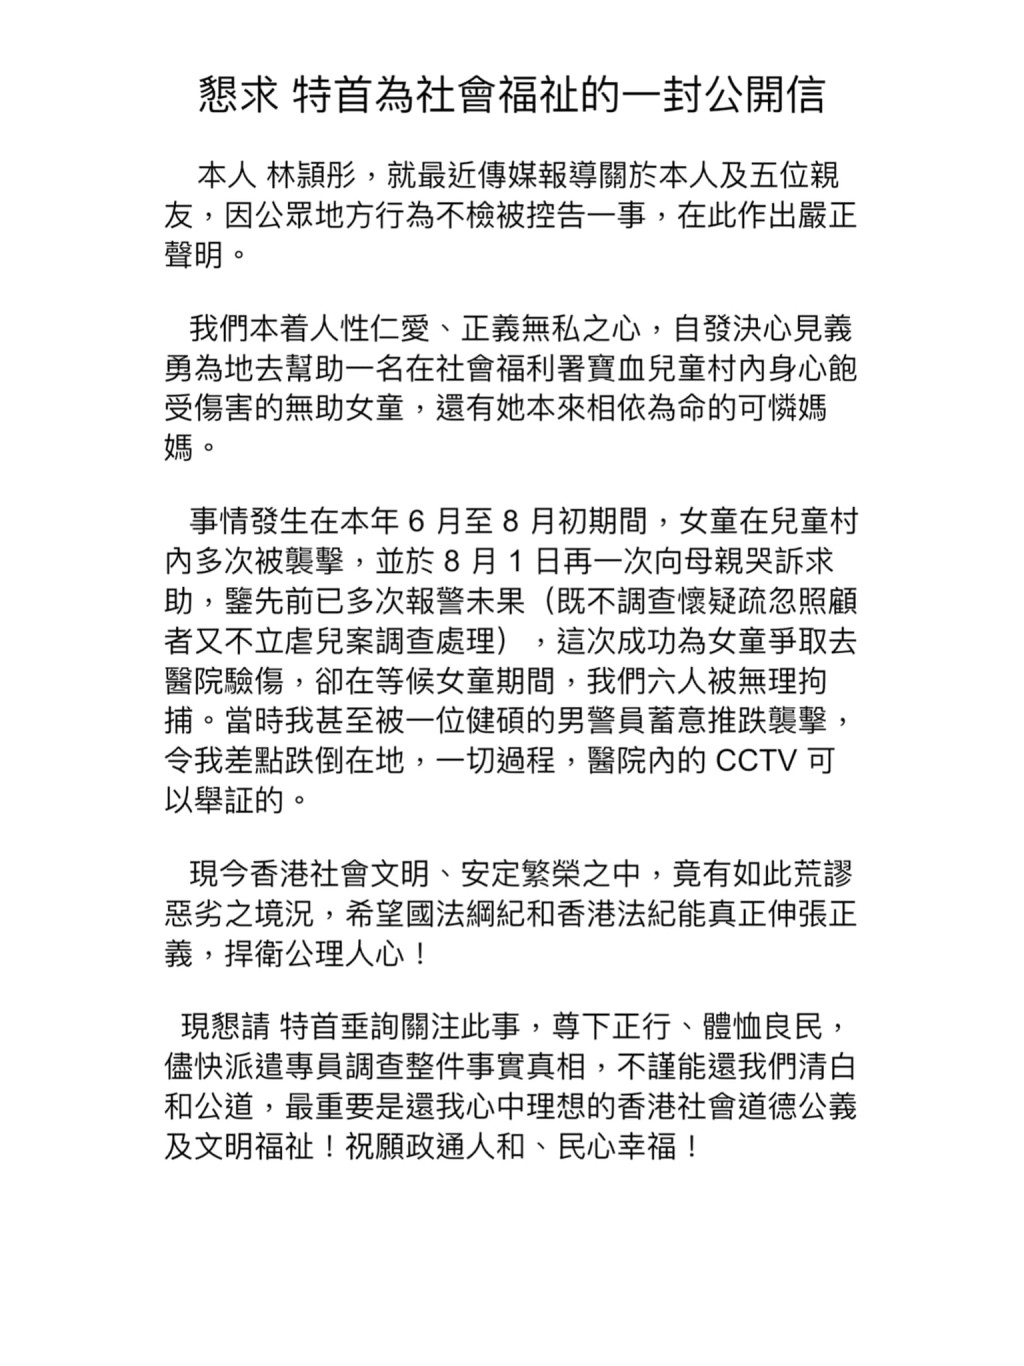 林颖彤之后又发公开信谈及医院事件。